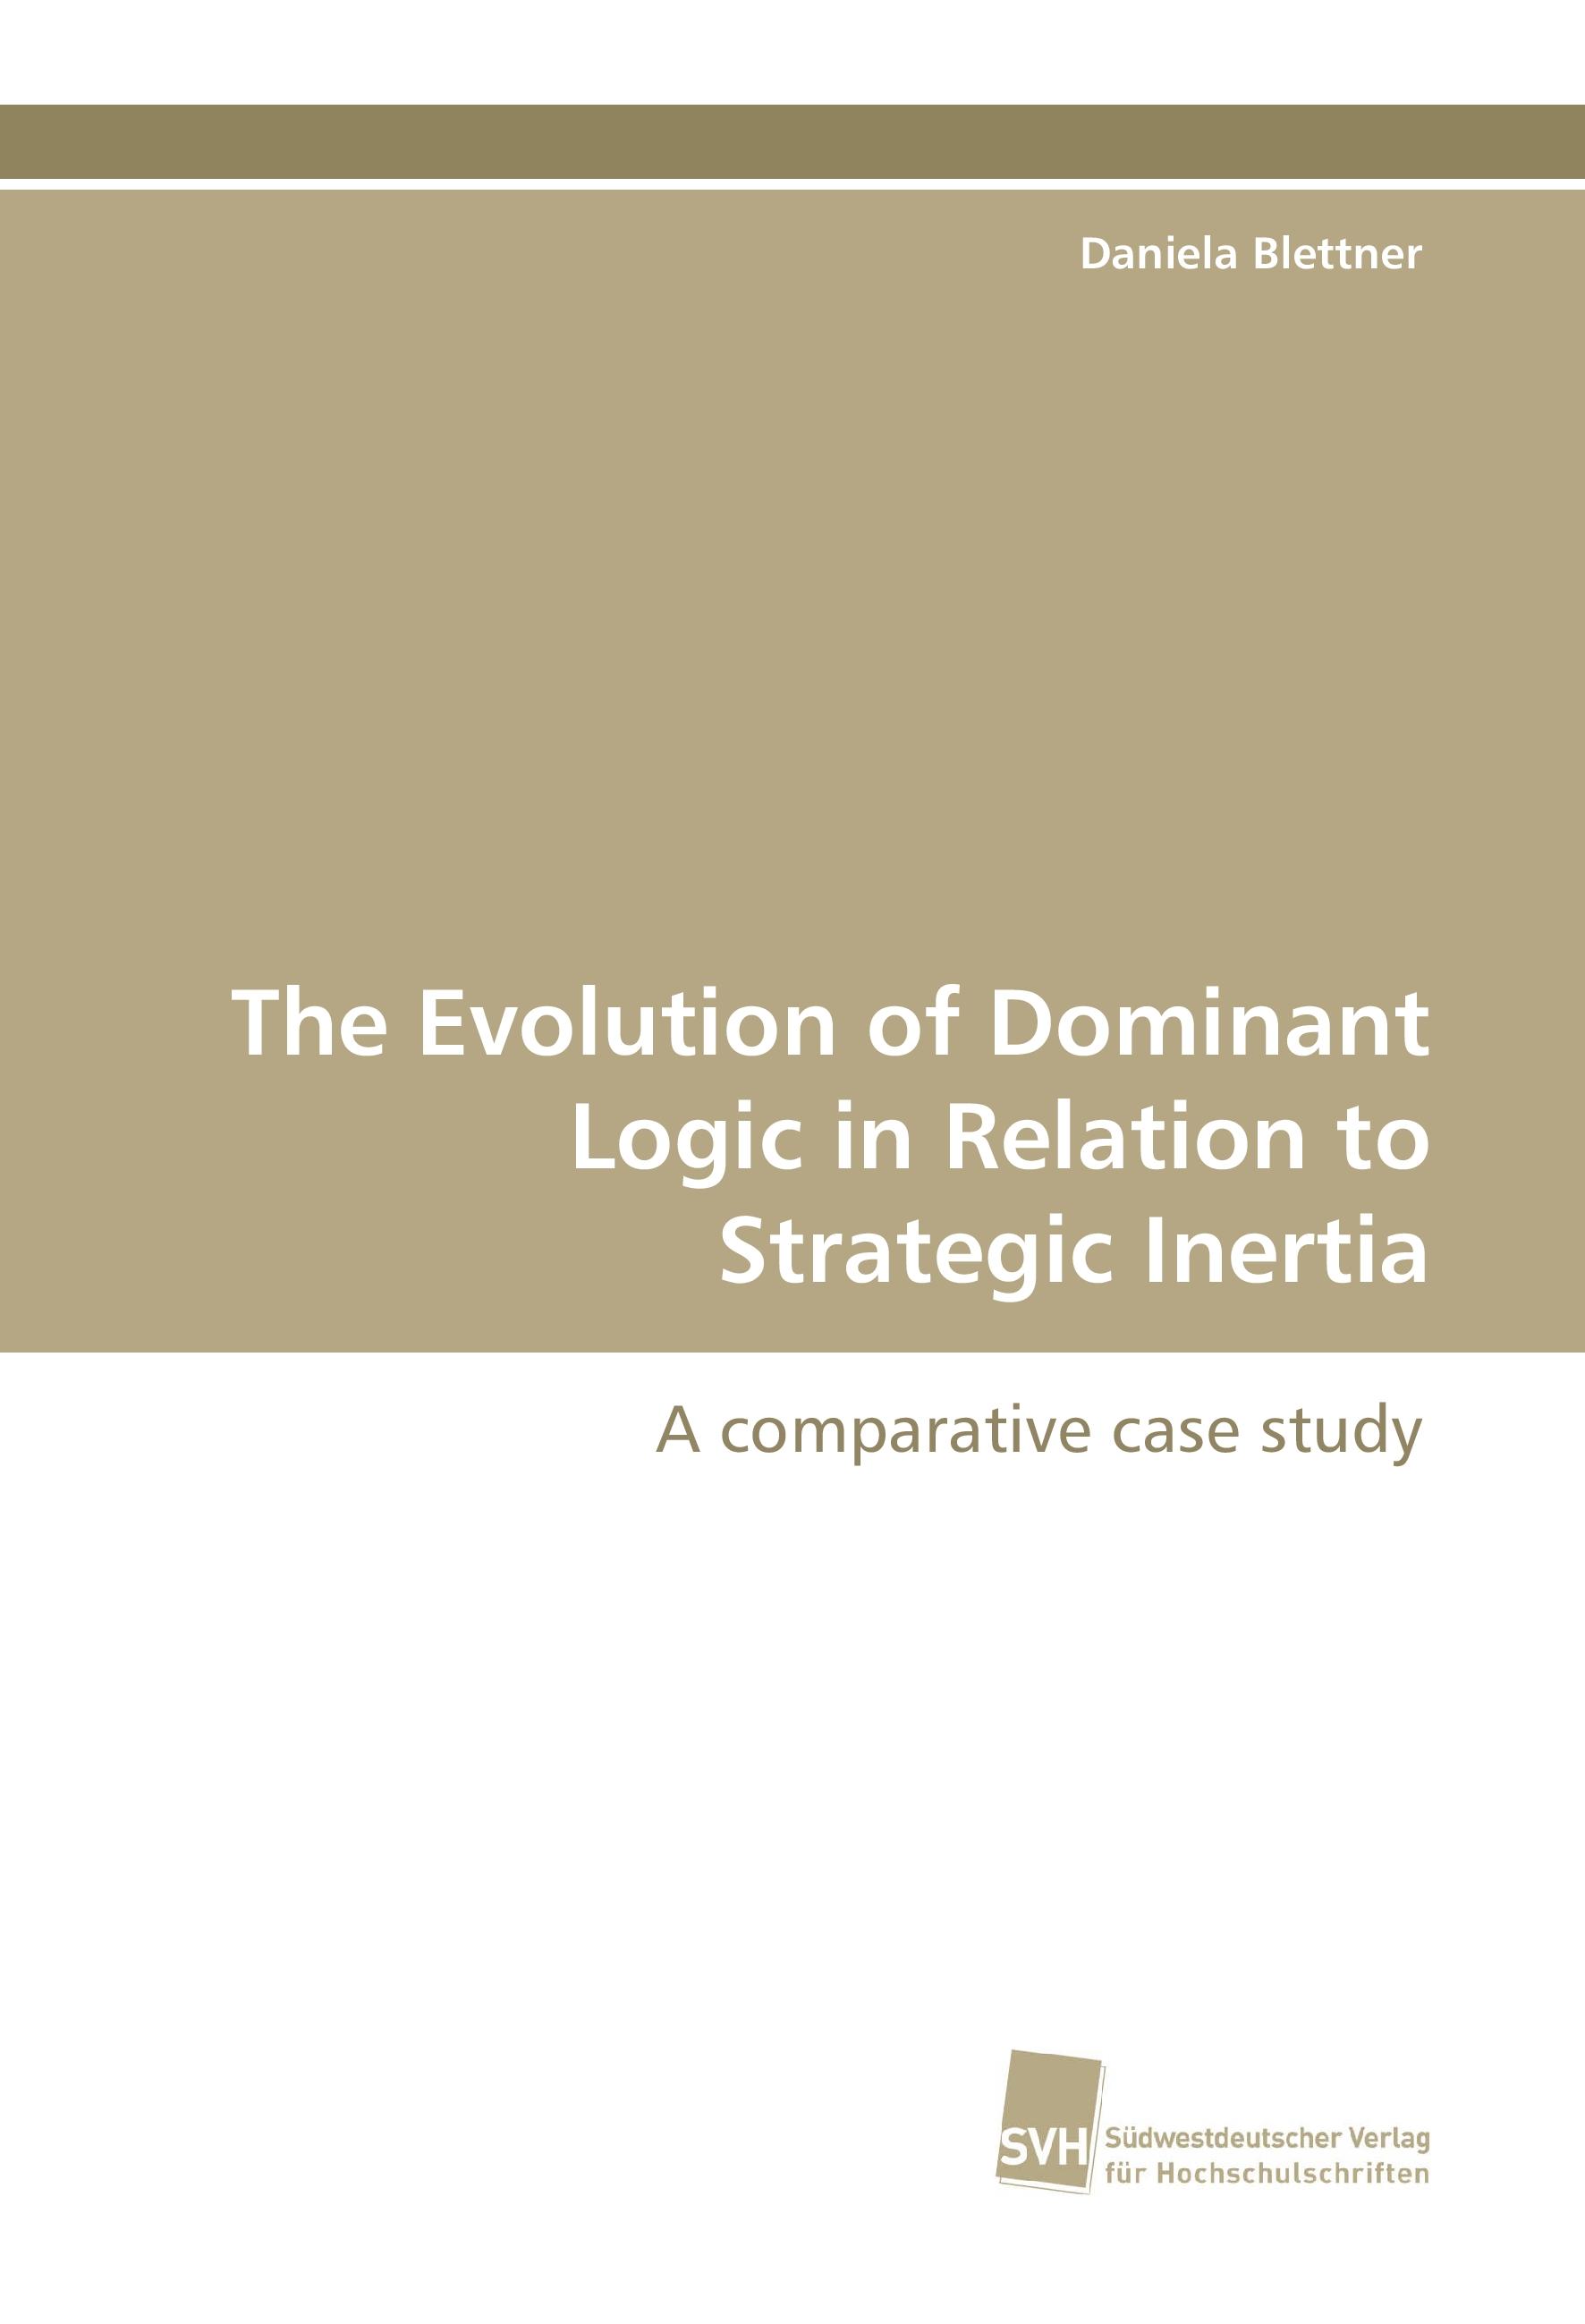 The Evolution of Dominant Logic in Relation to Strategic Inertia - Daniela Blettner